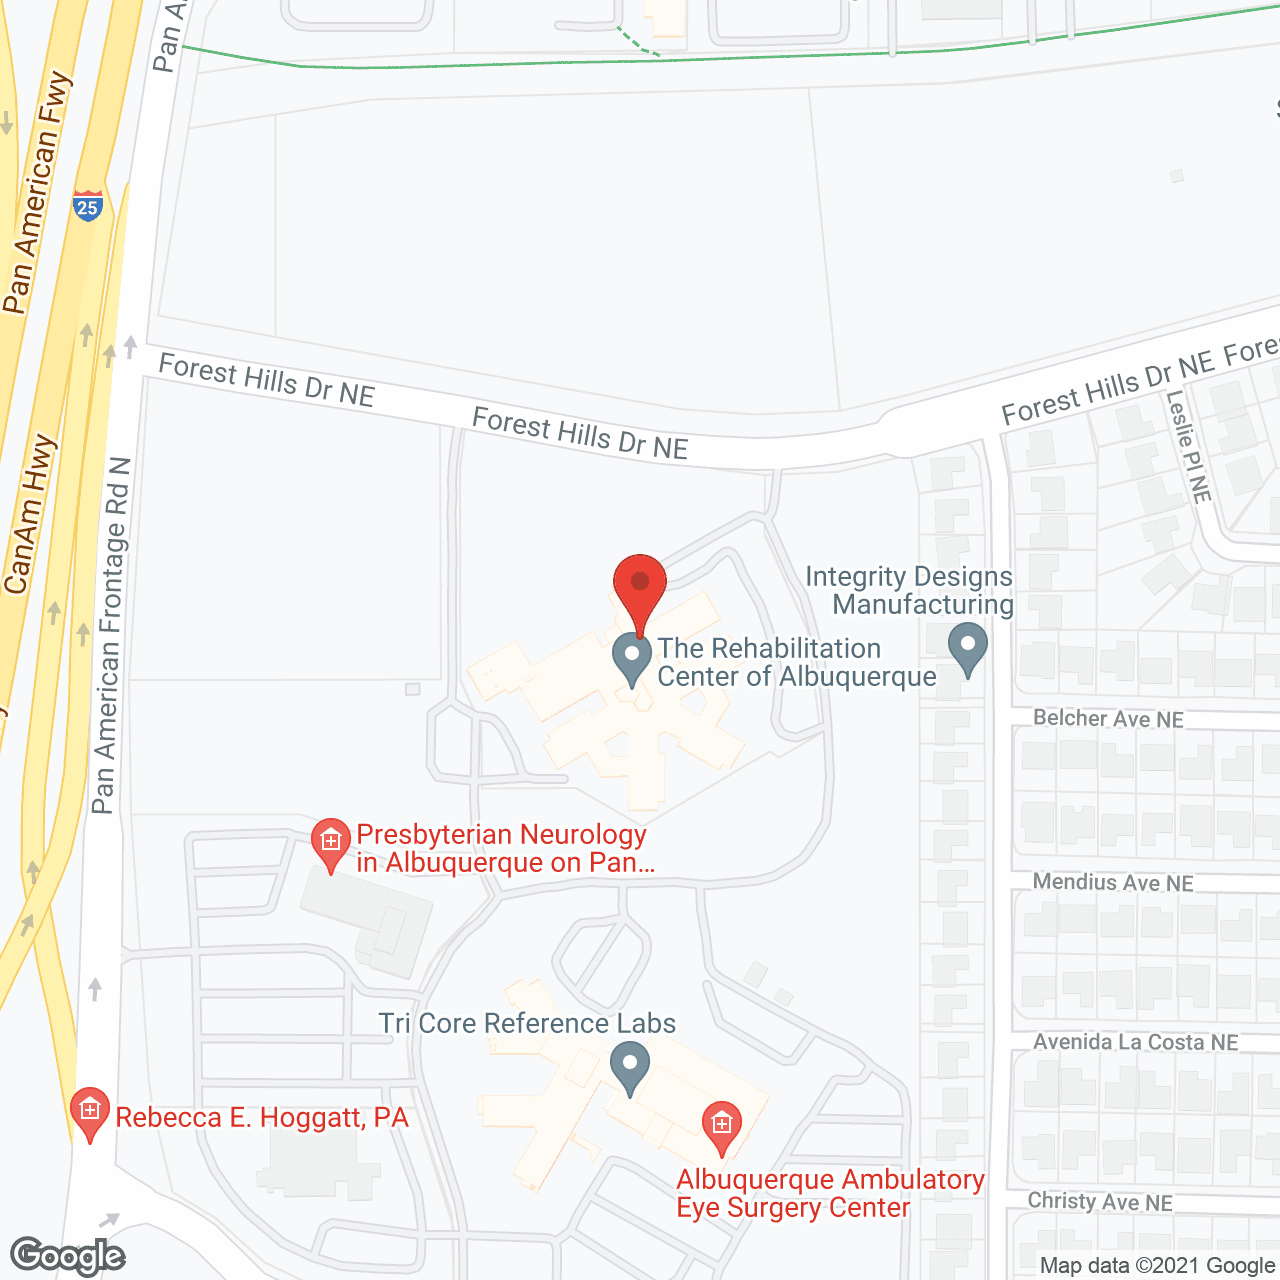 Albuquerque Rehabilitation Center in google map